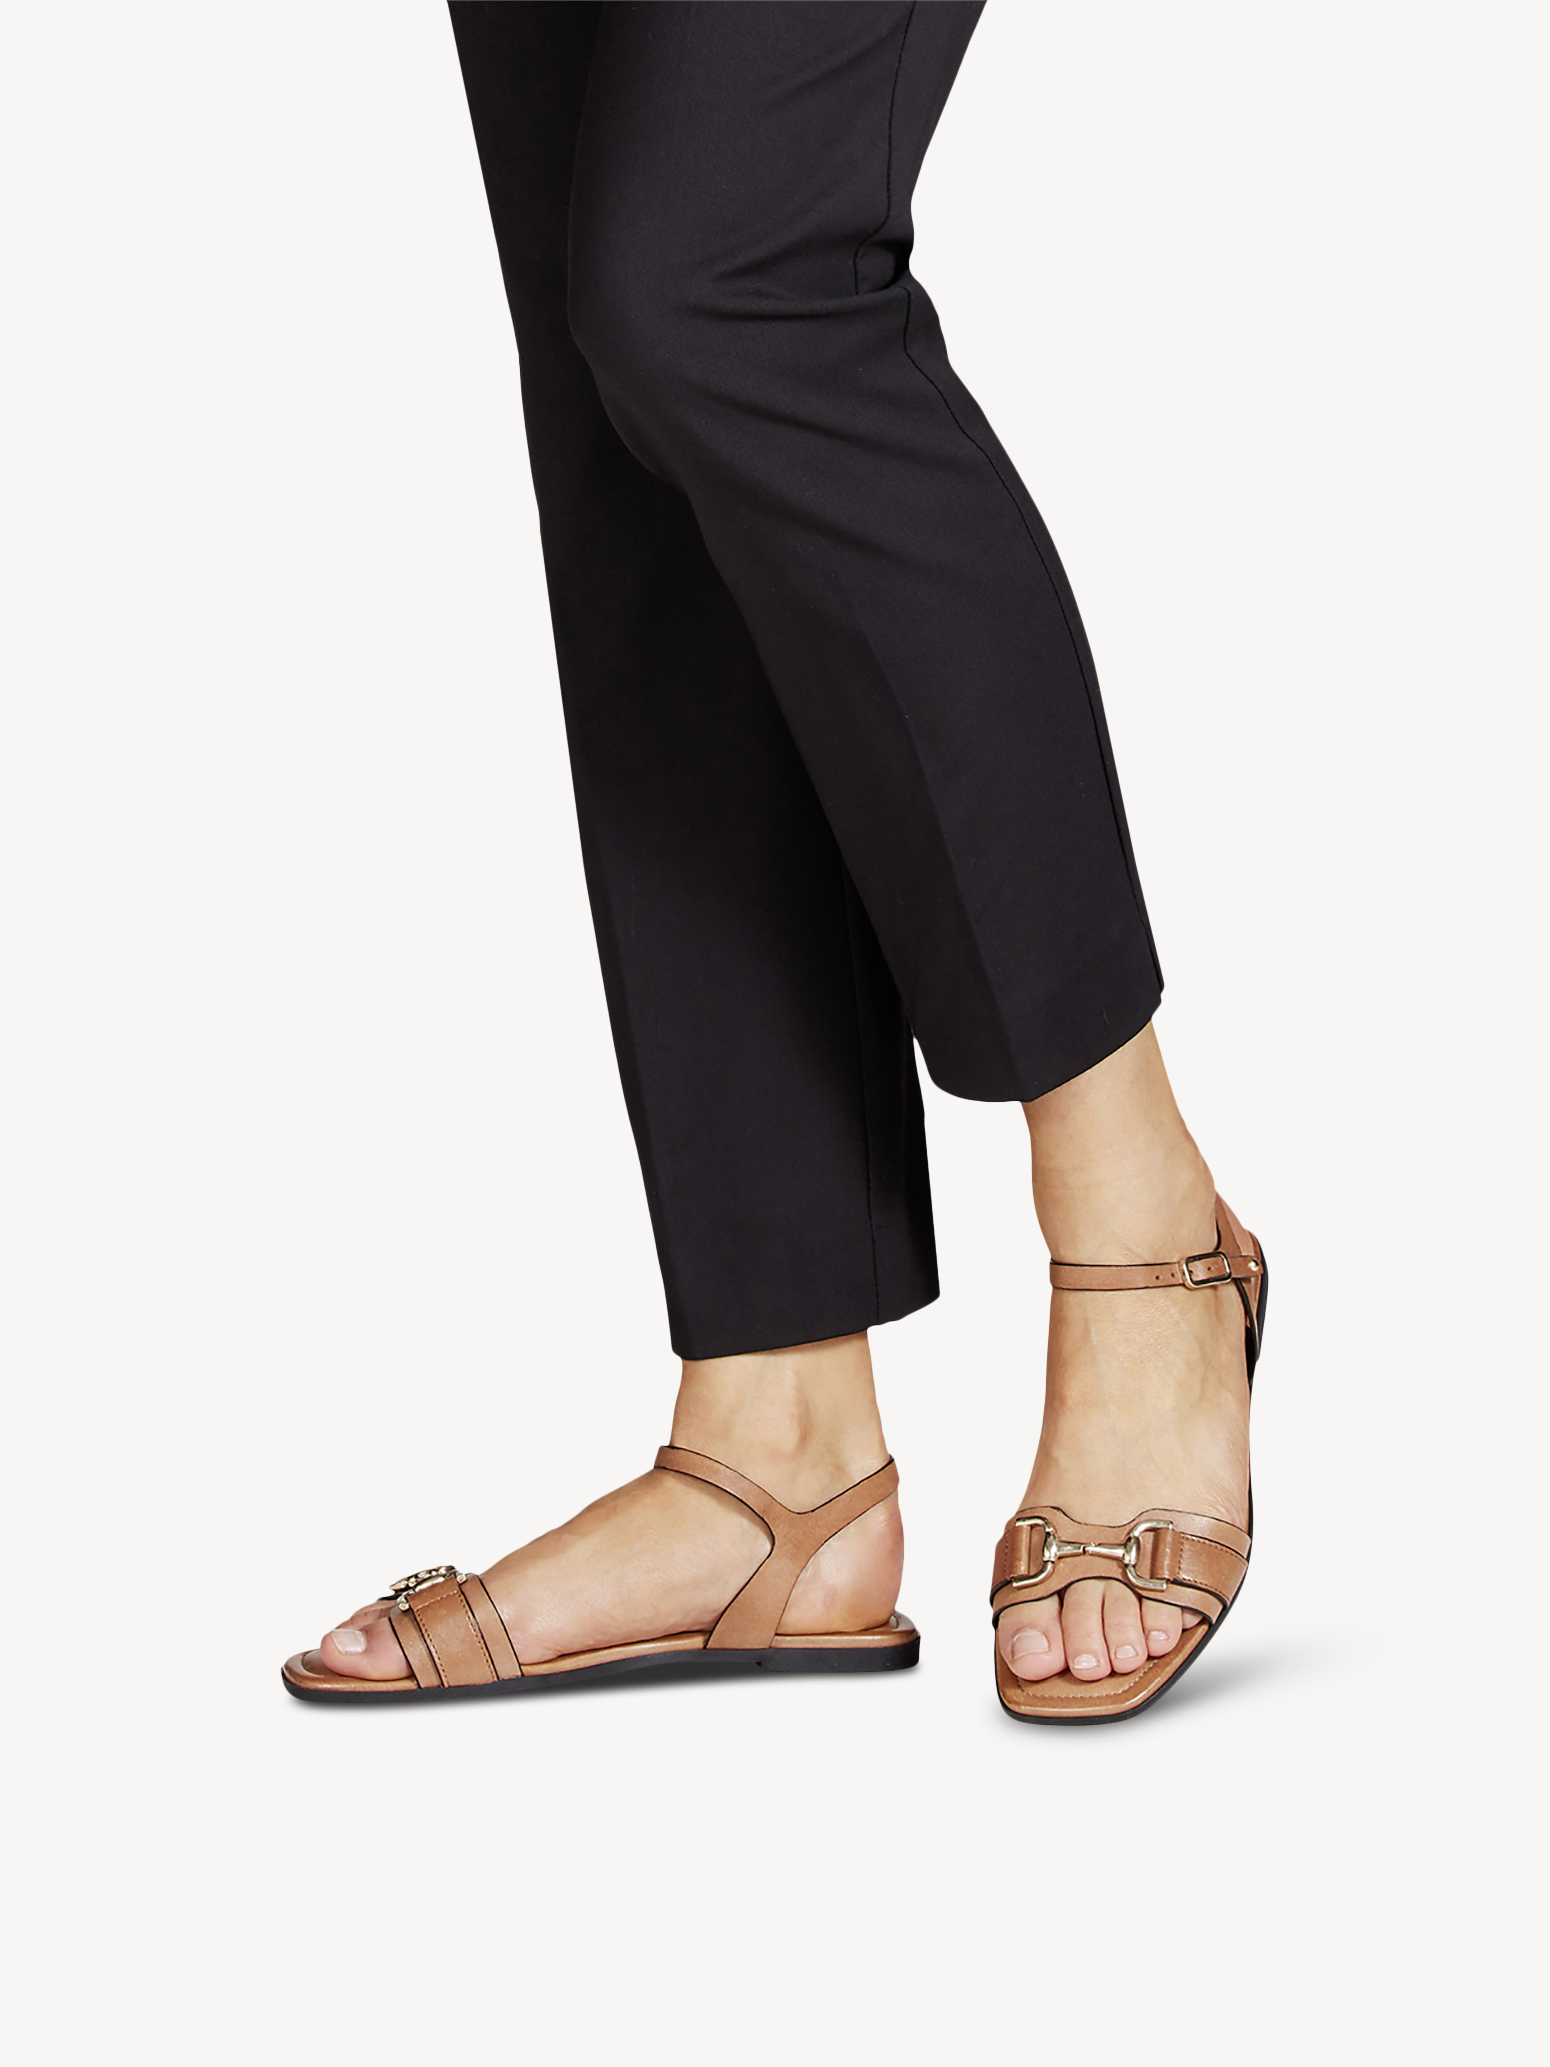 Туфли летние открытые жен. (коричневый) - изображение №1